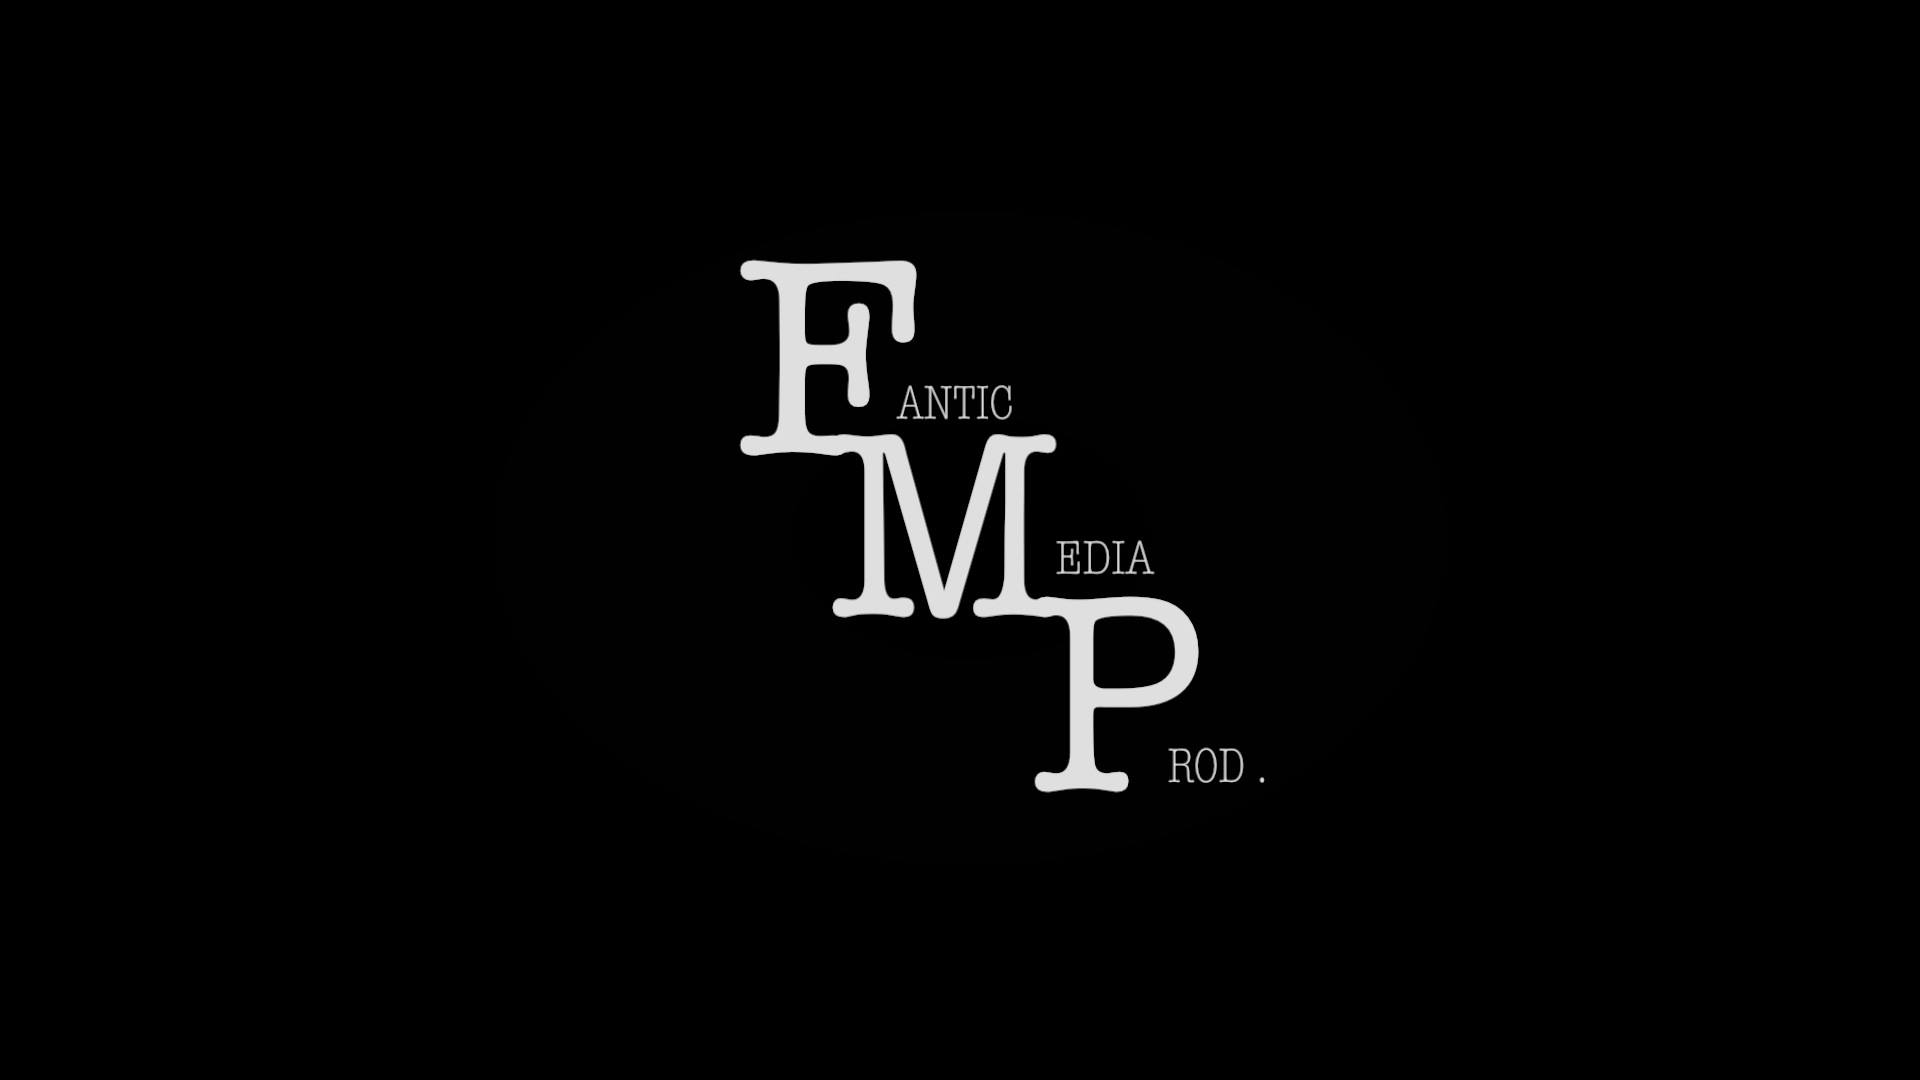 FMP (Fanatic Media Productions) Est. 2011